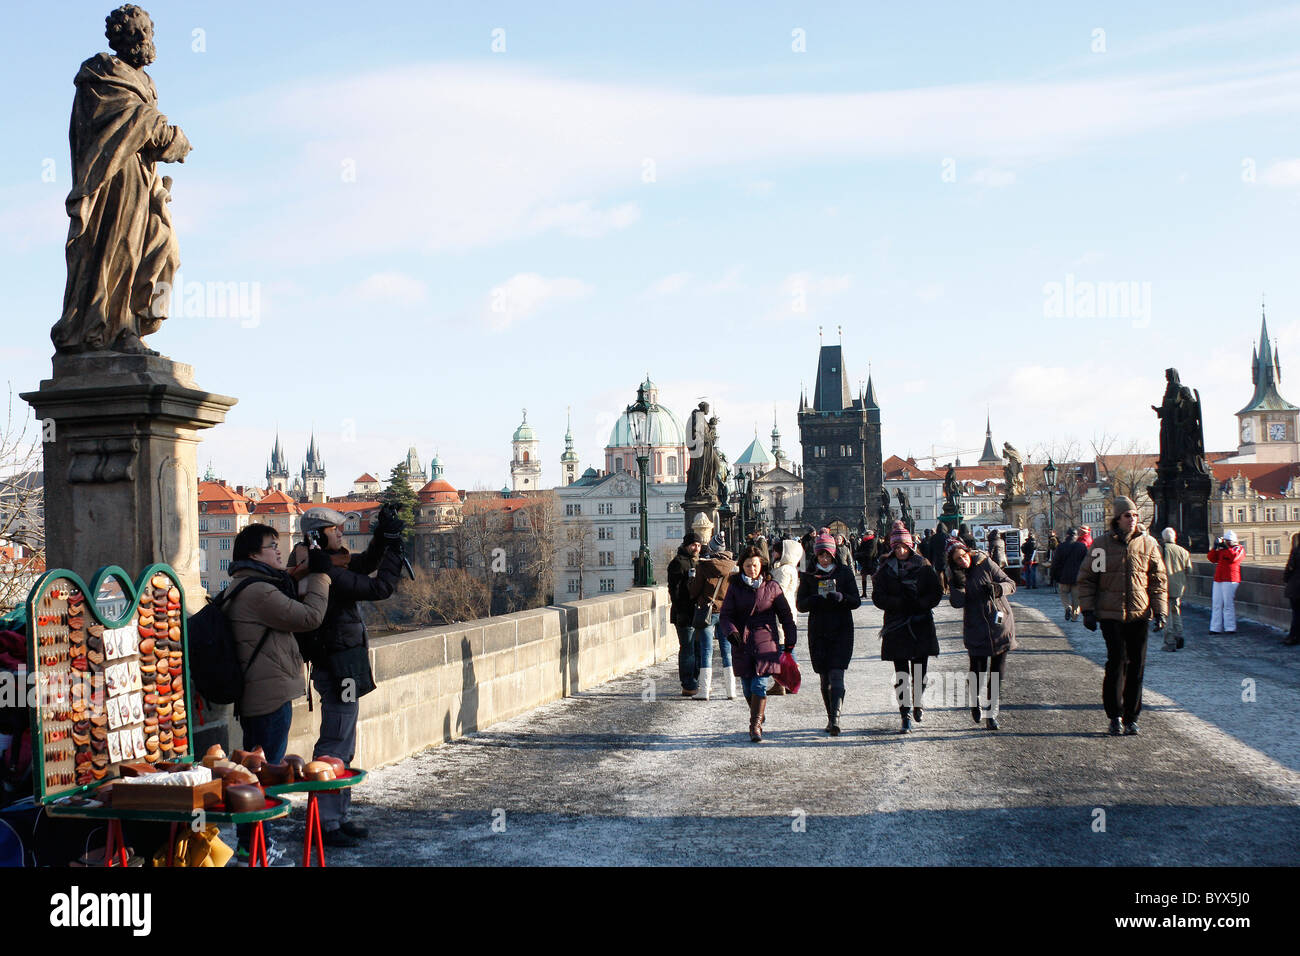 L'historique pont Charles sur la Vitava River,Prague,occupé avec les artistes et les touristes tout au long de l'année. Banque D'Images